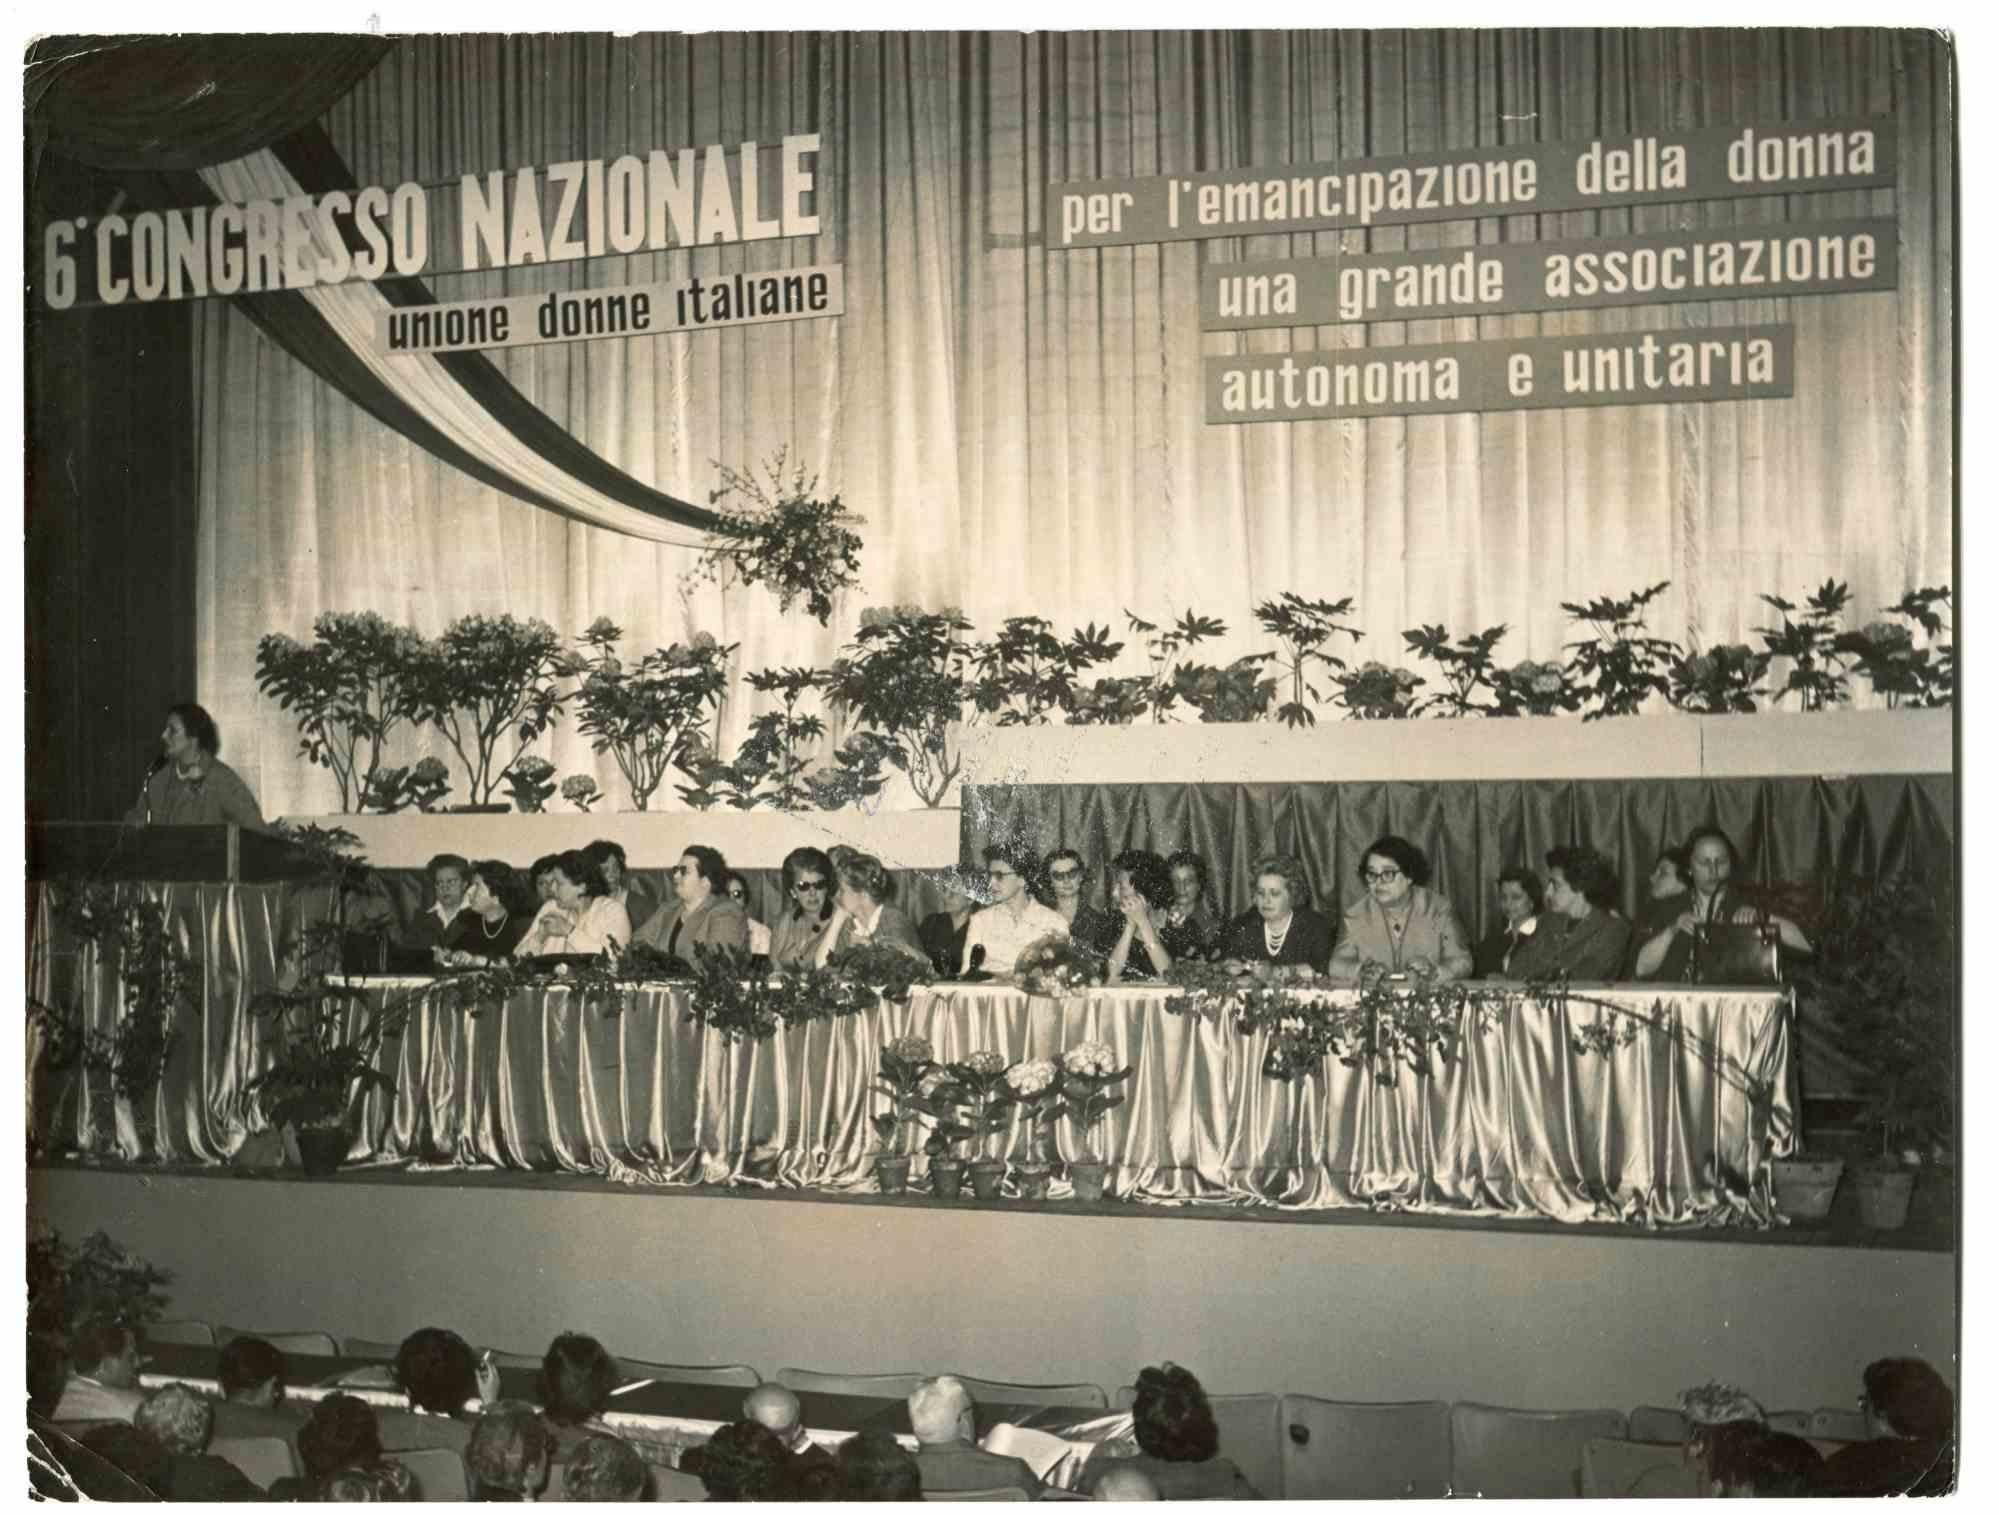 Unknown Black and White Photograph – The National Congress – Historische Fotografie über die feministischen Bewegungen – 1950er Jahre